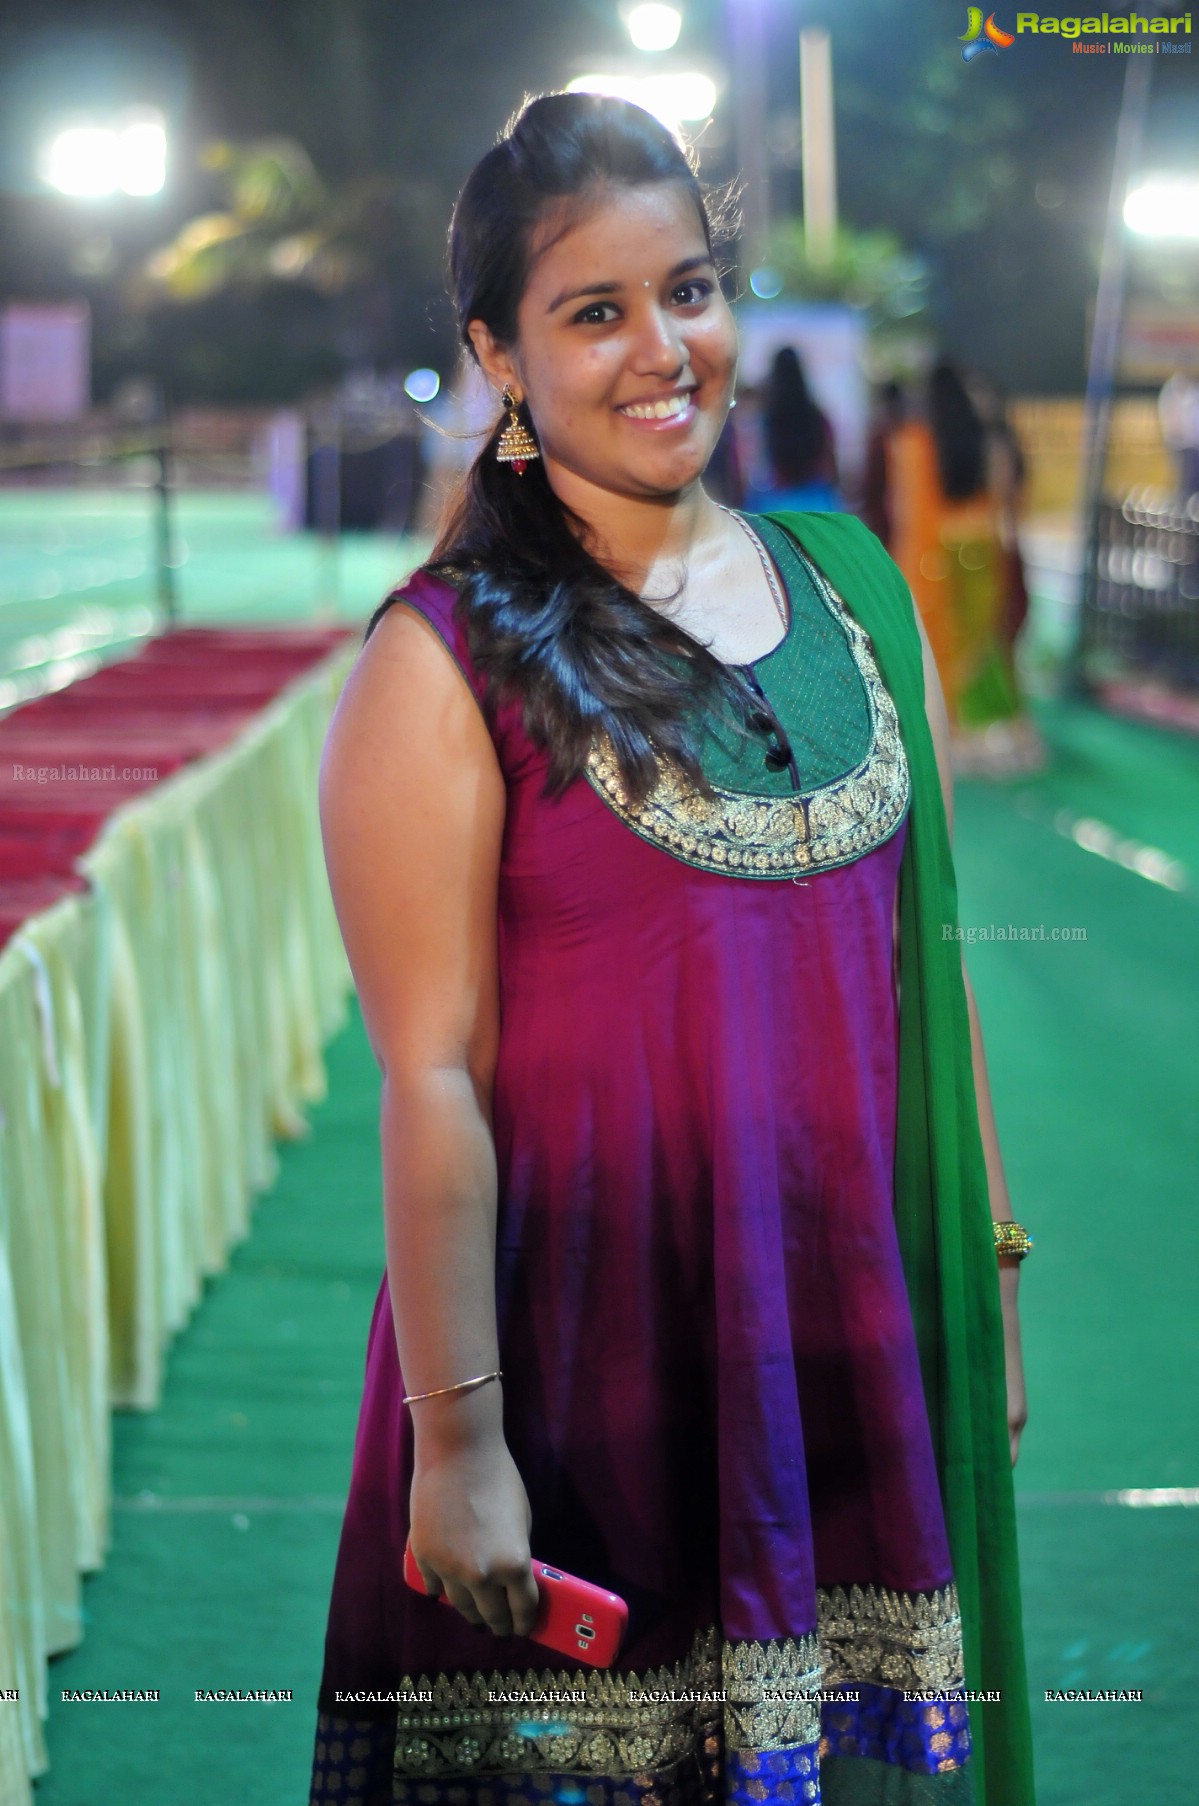 Legend Navratri Utsav 2014 at Imperial Gardens, Hyderabad (Day 8)